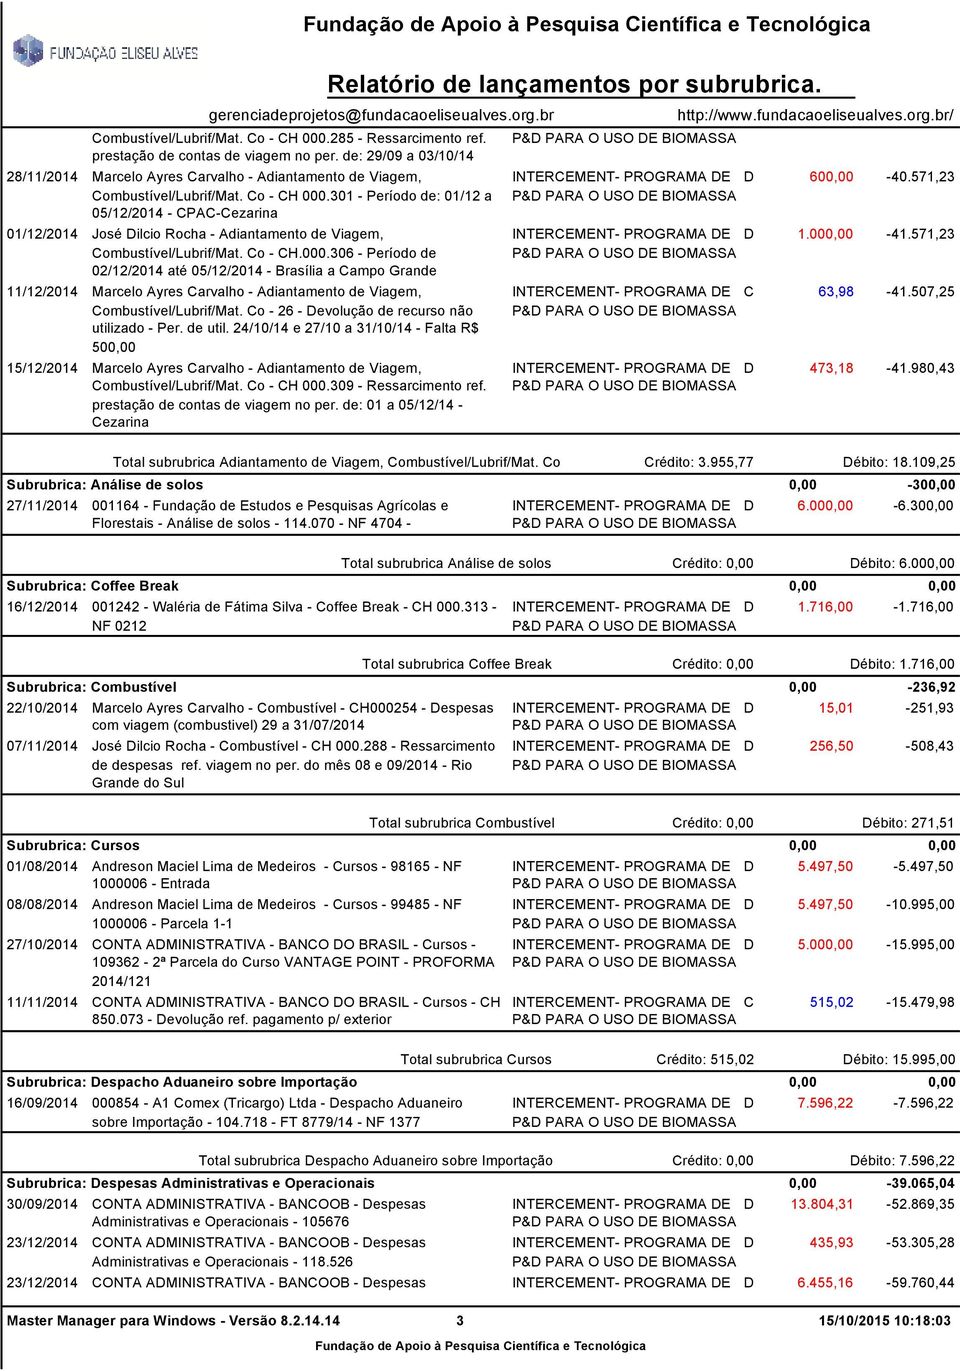 301 - Período de: 01/12 a 05/12/2014 - CPAC-Cezarina 01/12/2014 José Dilcio Rocha - Adiantamento de Viagem, Combustível/Lubrif/Mat. Co - CH.000.